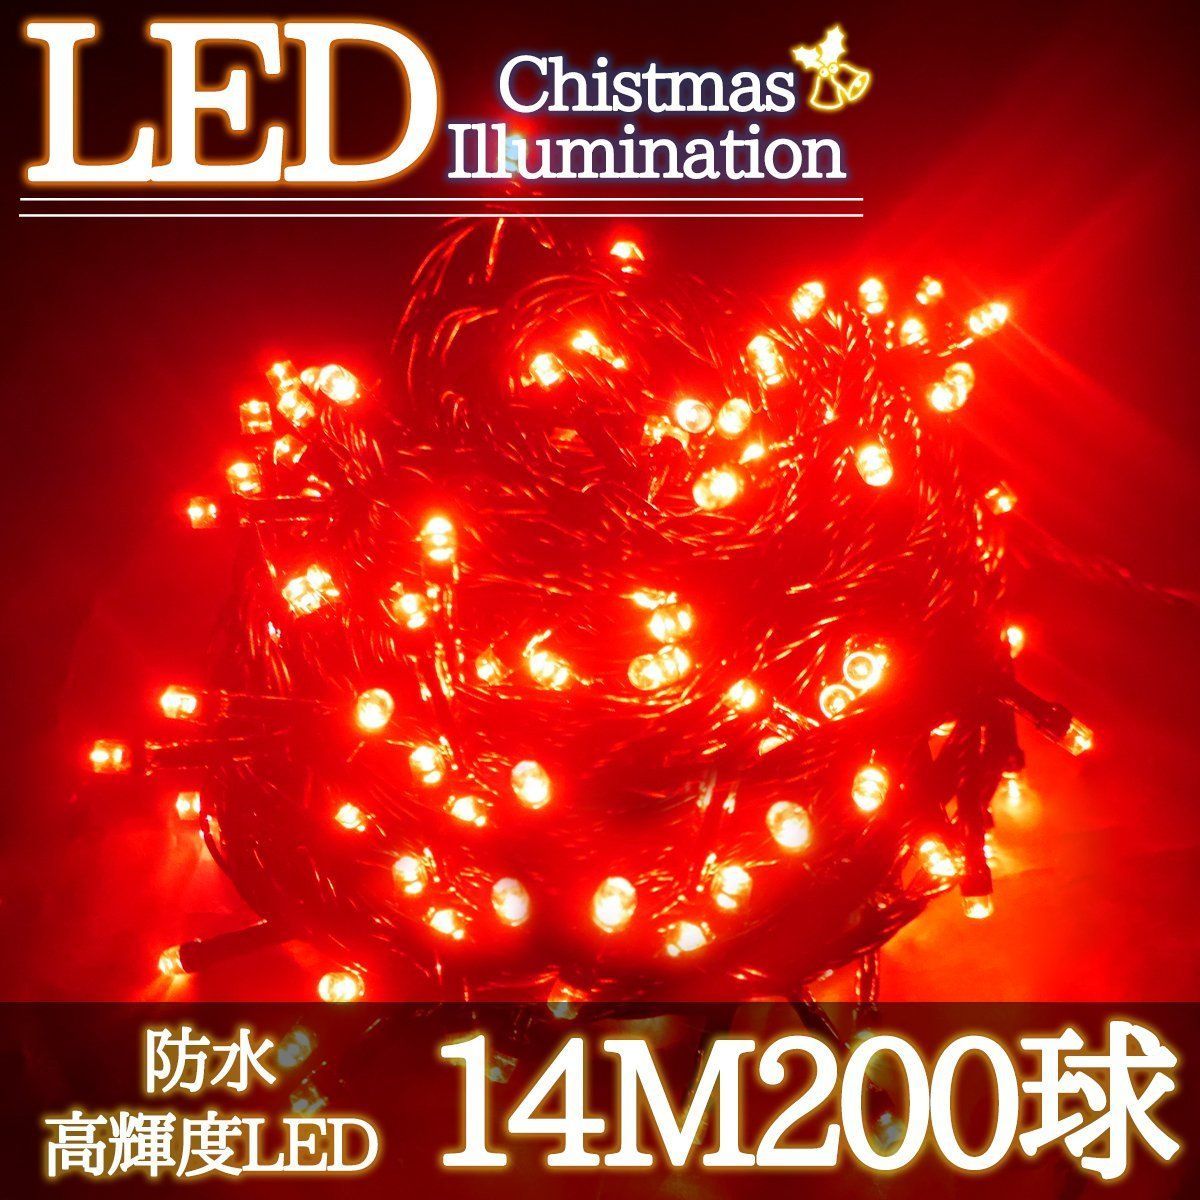 LEDイルミネーション 14M LED200灯 単品 レッド KR-95 www